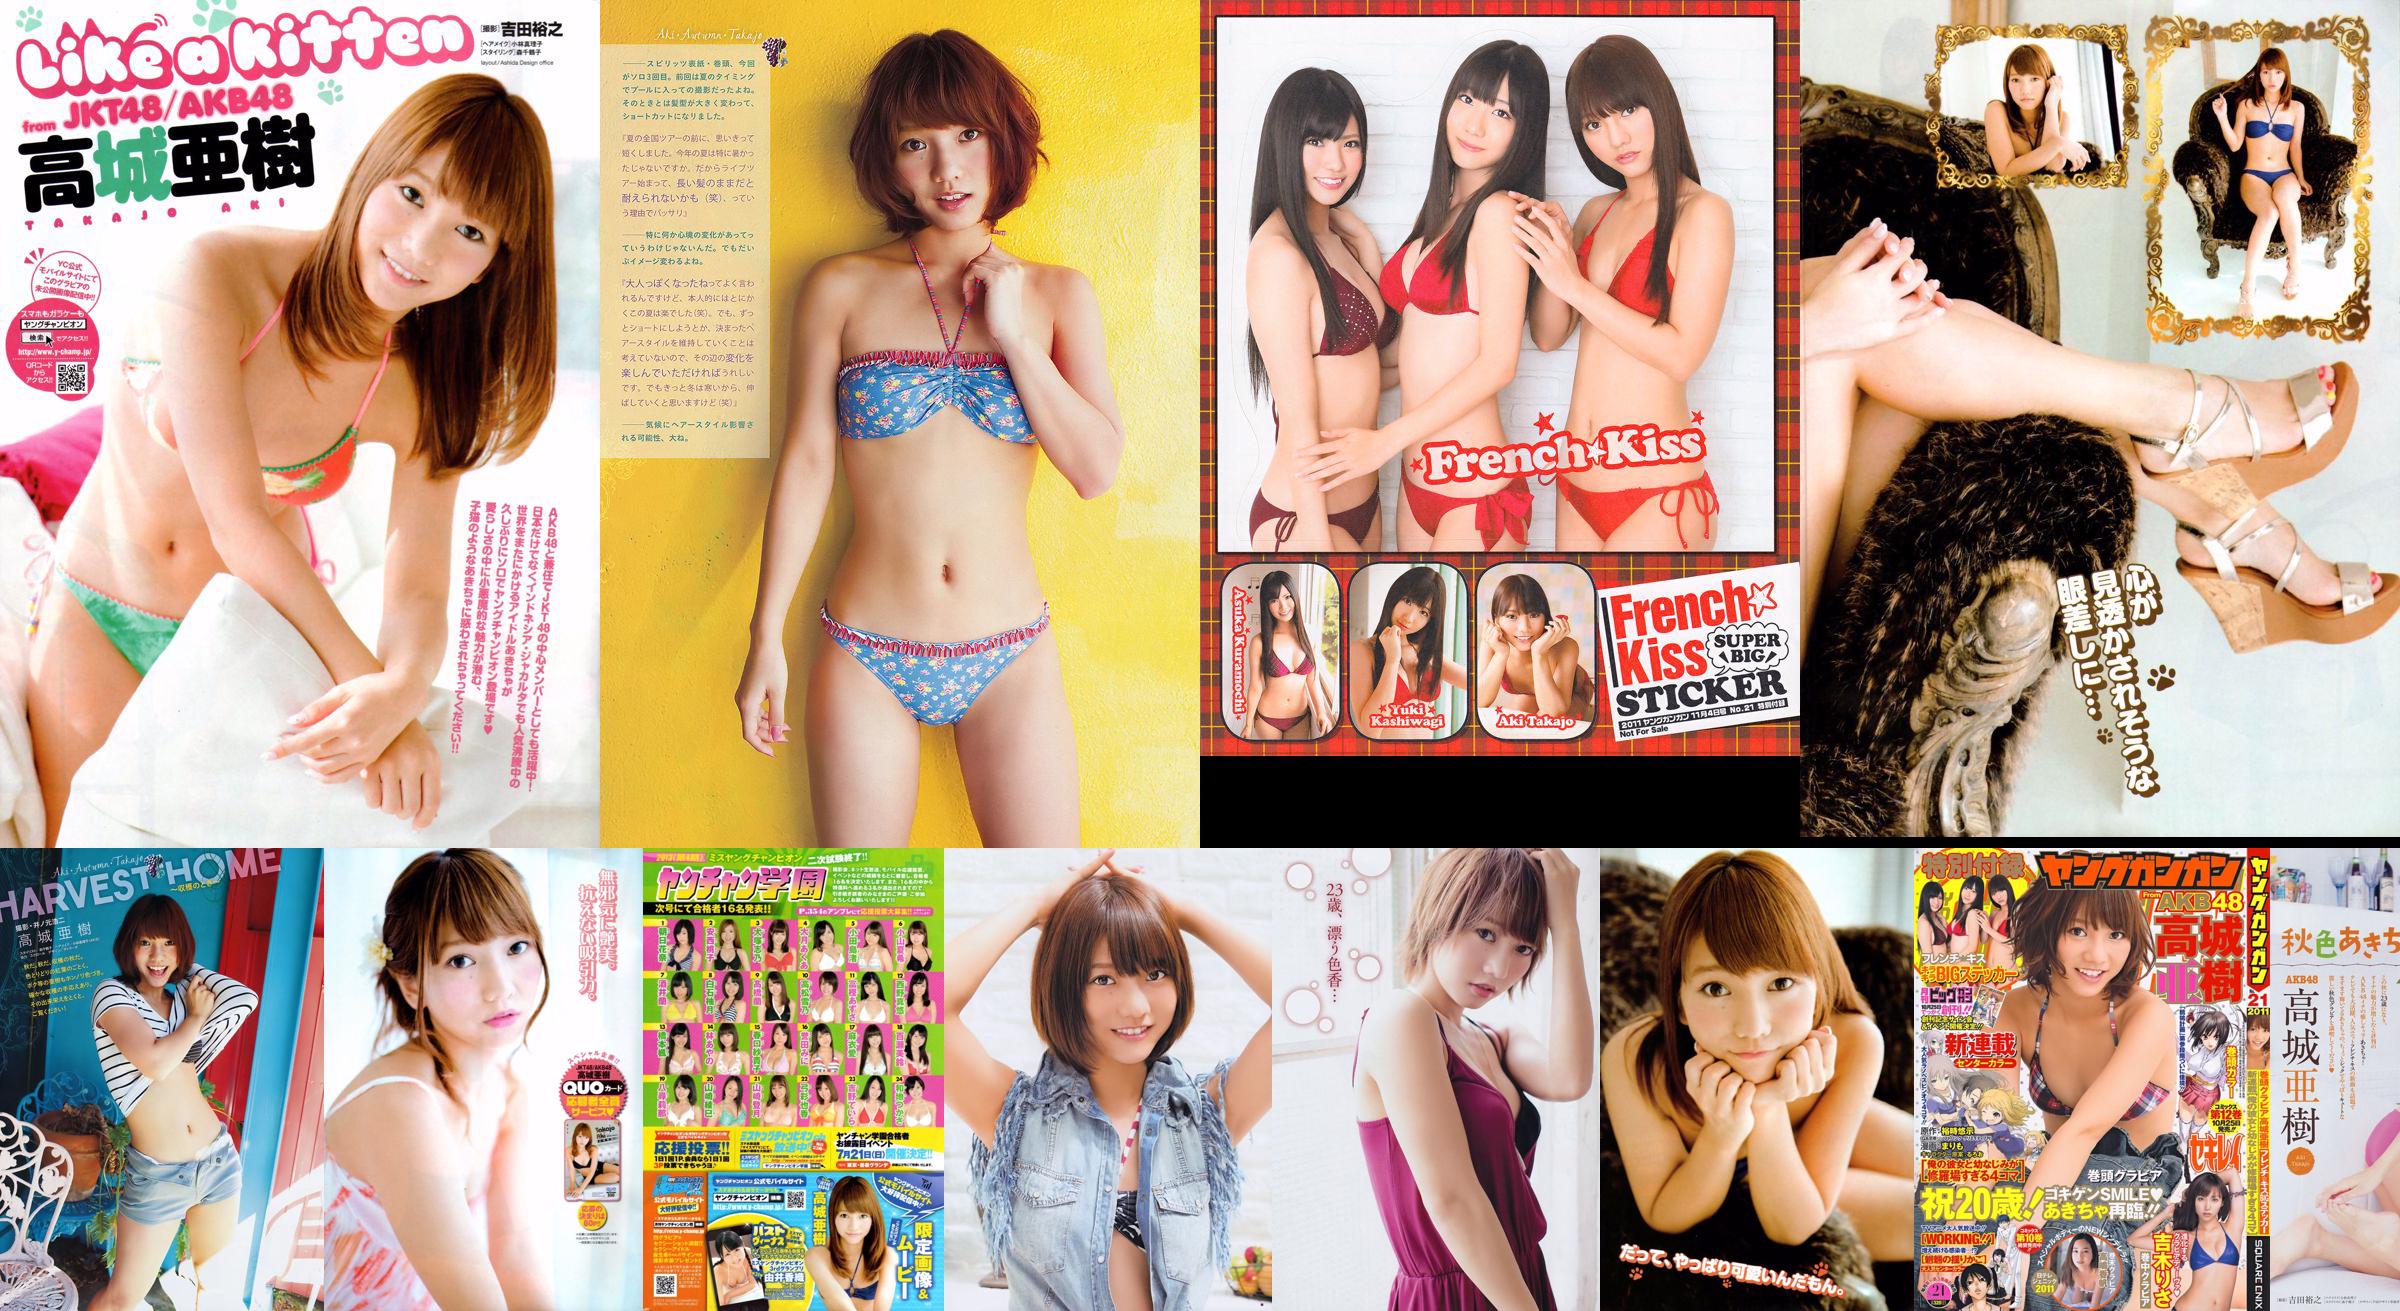 [Campeón Joven] Takajo Aki Izumi Misaki 2014 No.21 Photo Magazine No.3faacf Página 1